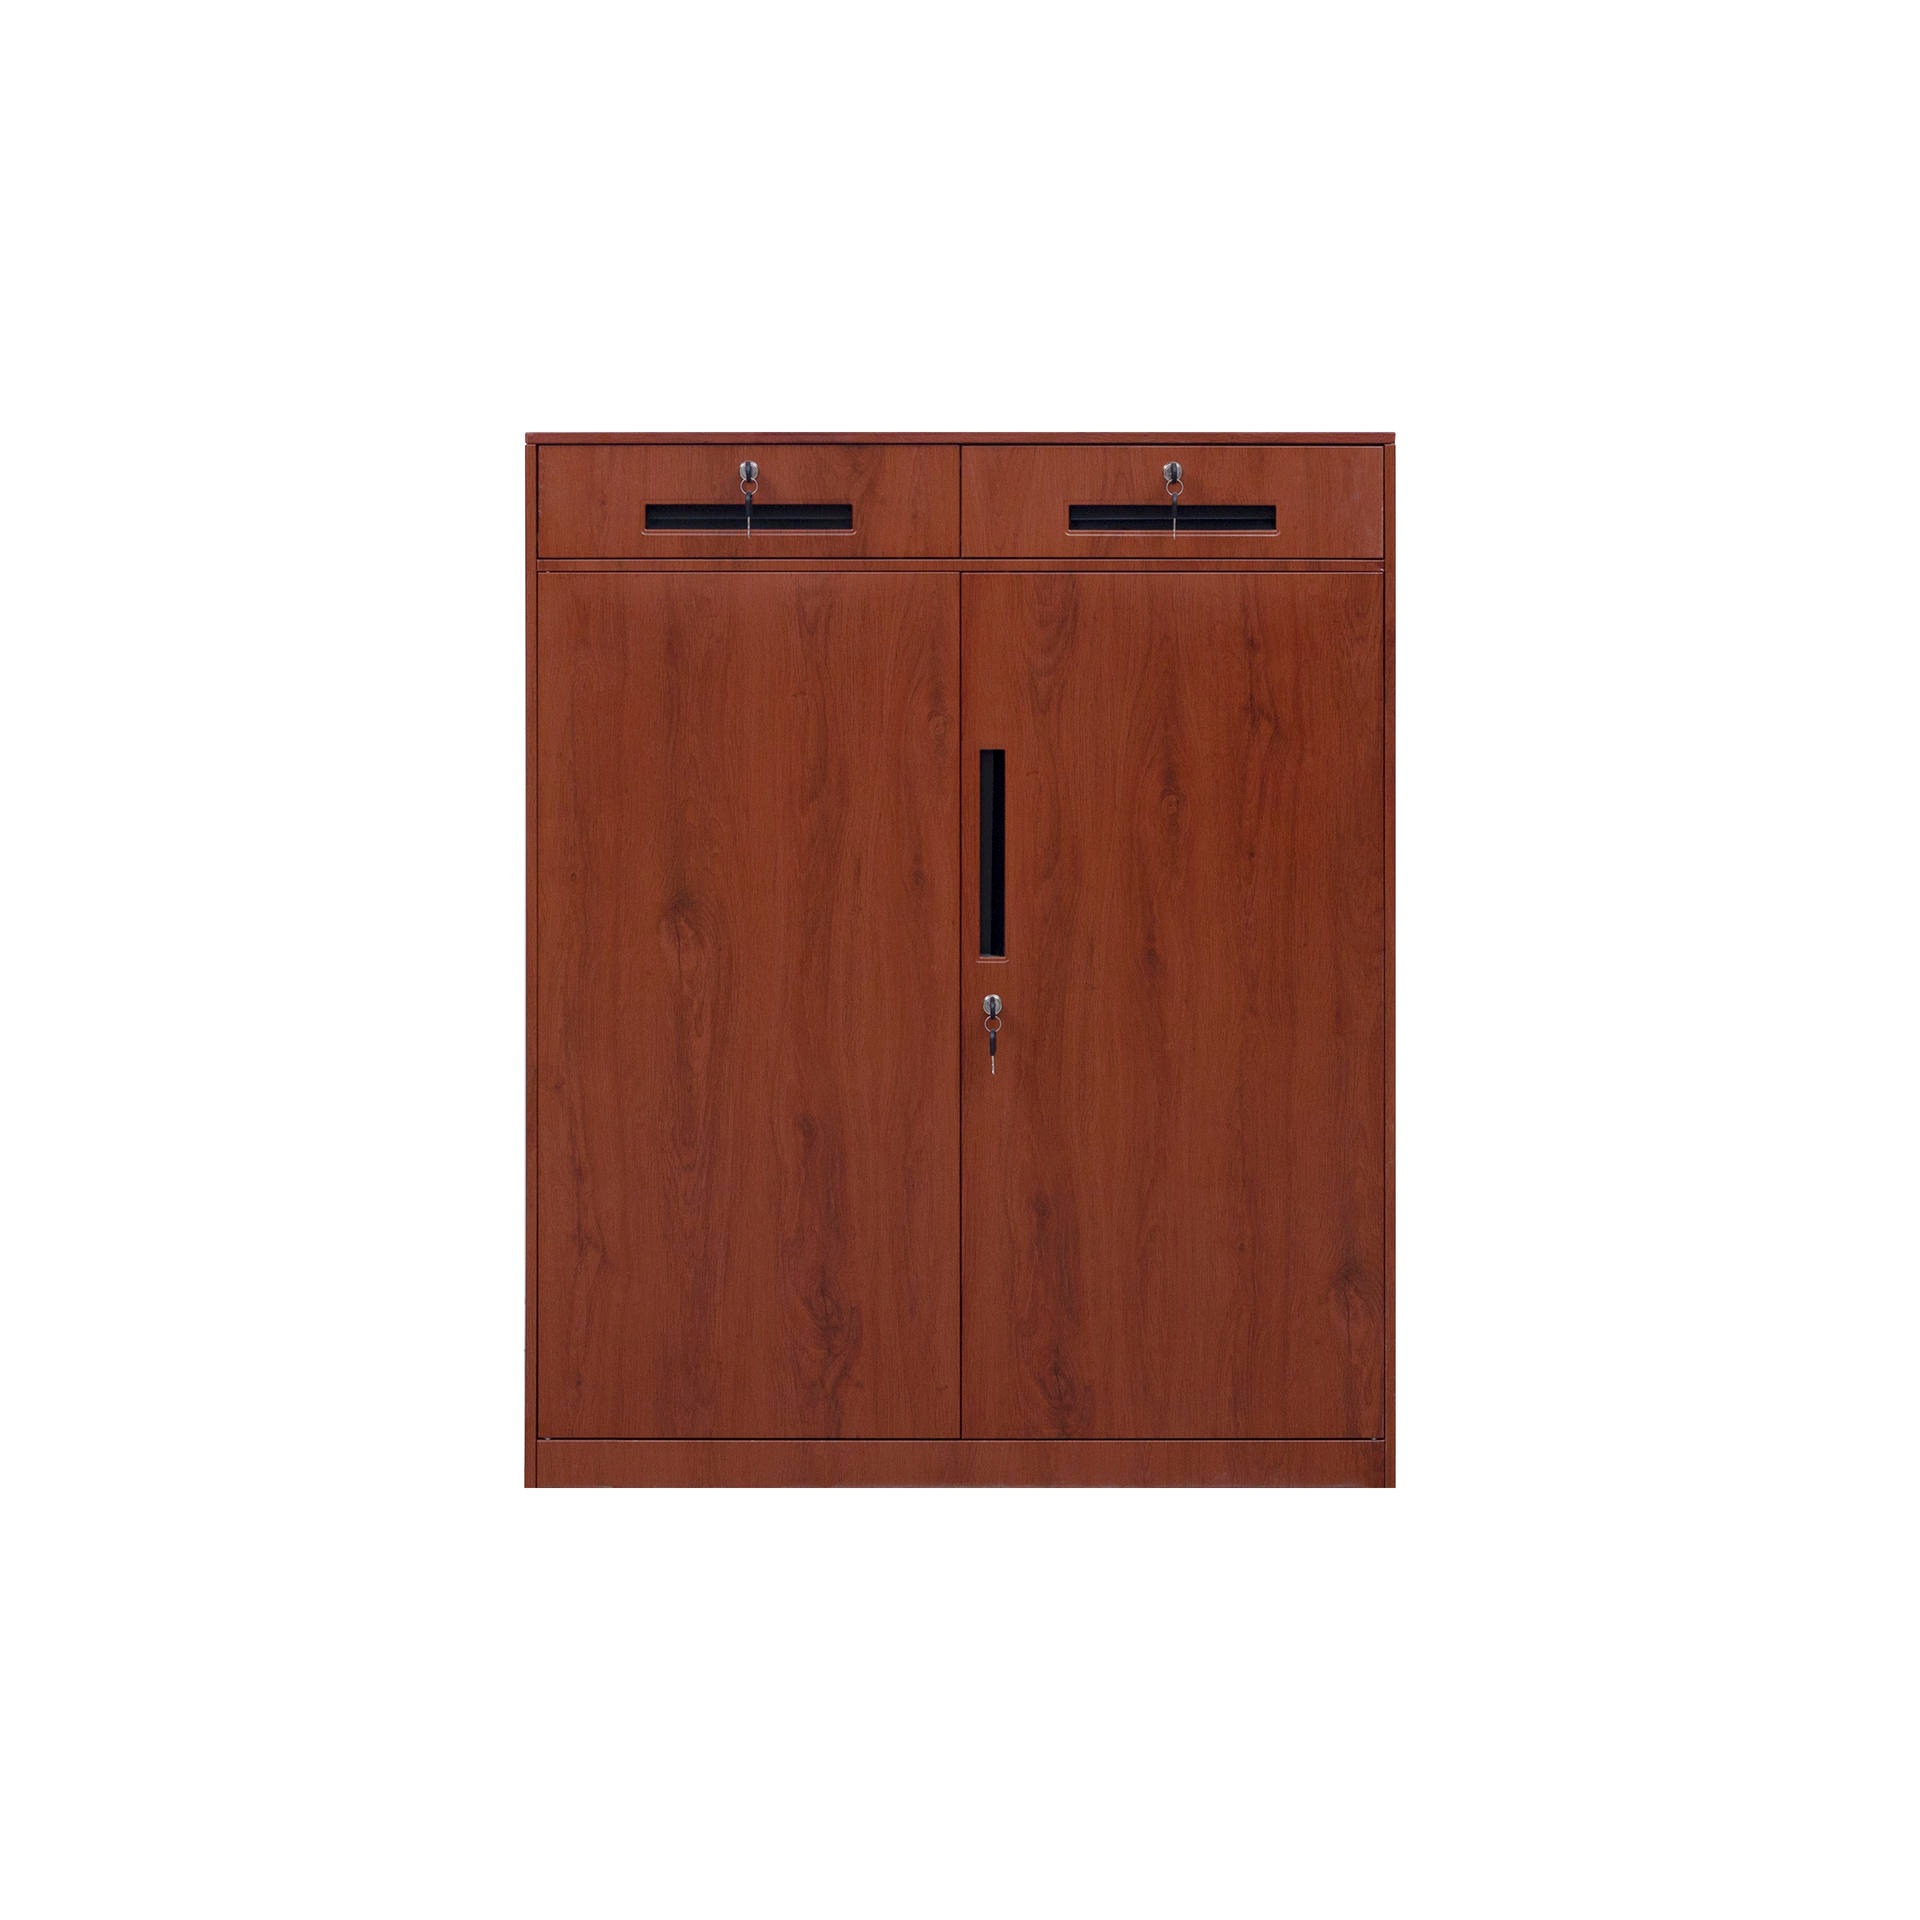 钢制仿木纹两斗矮柜钢制二斗档案柜对开门二斗矮柜两门抽屉式矮柜可调节式矮柜图片